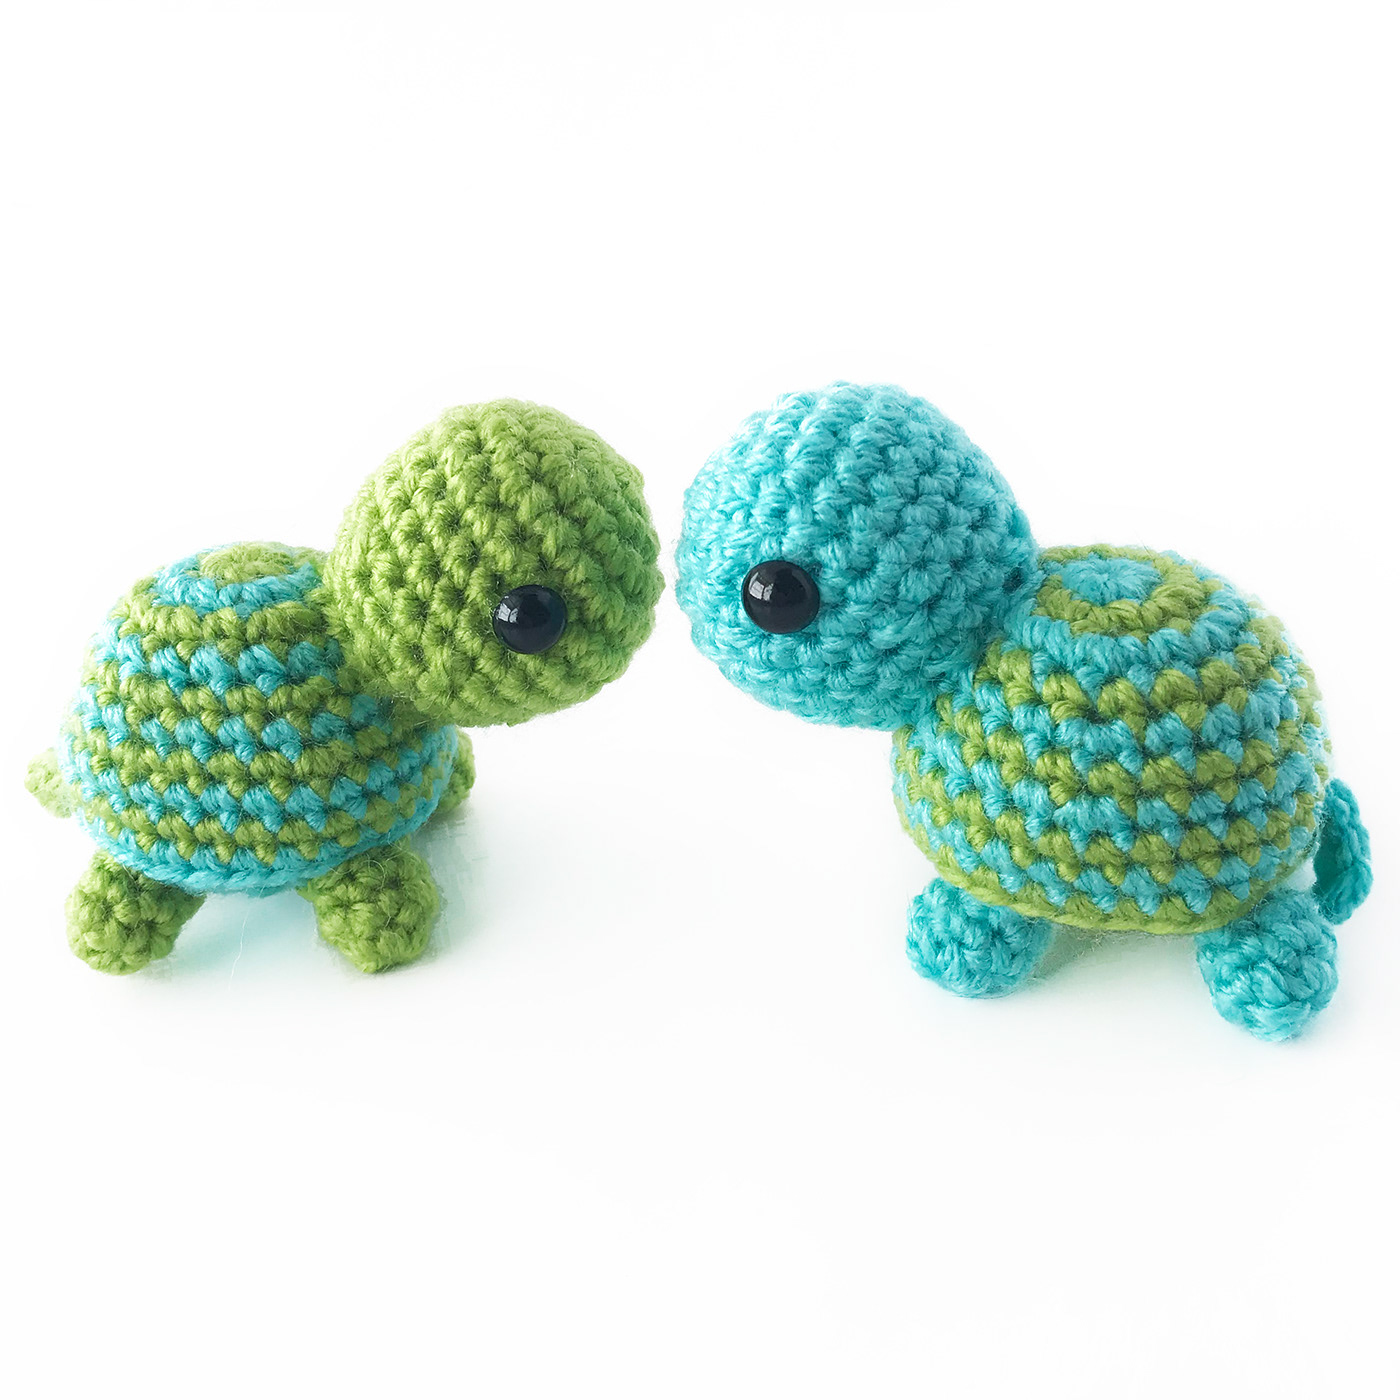 Turtle crochet amigurumi crochet turtle turtle amigurumi small turtle purple turtle Blue Turtle teal turtle